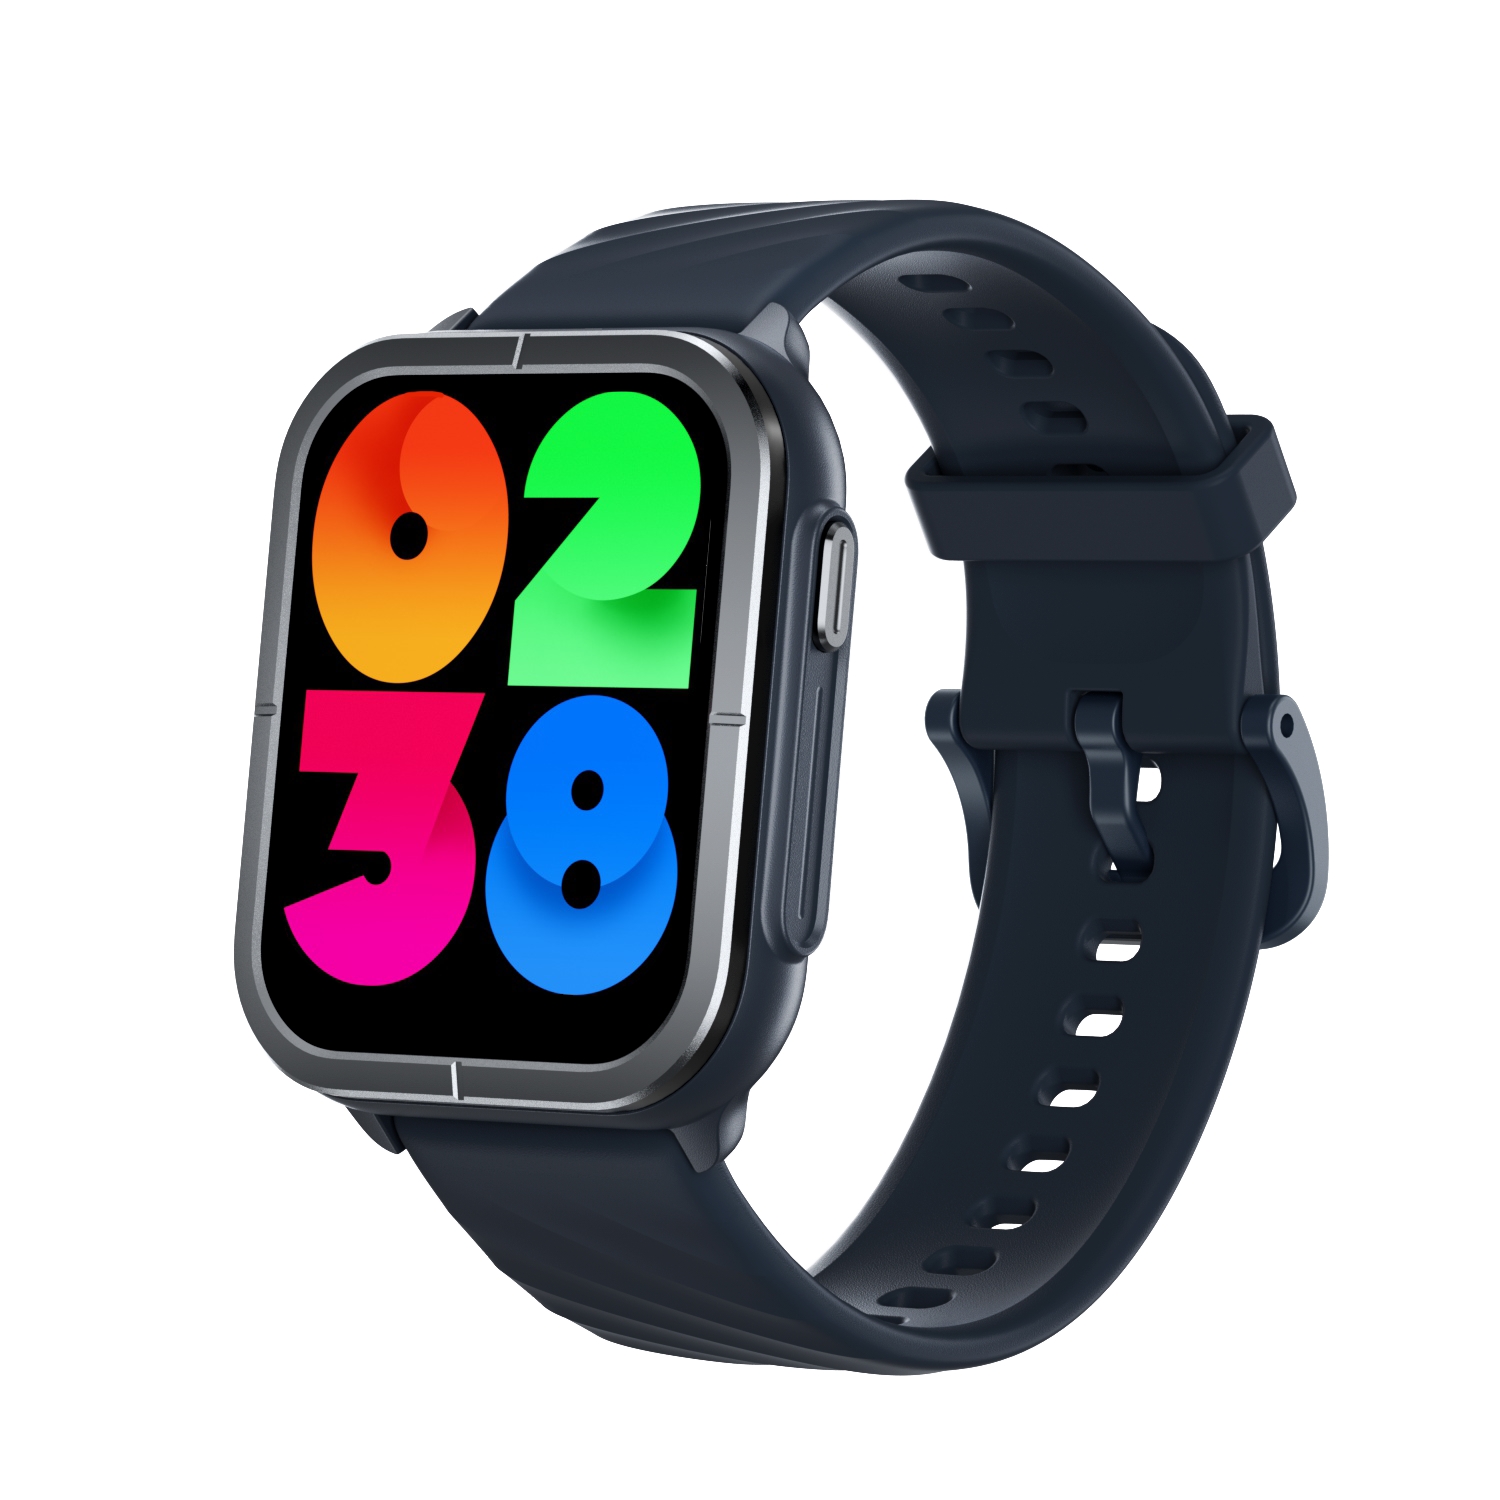 Mibro - Mibro Watch C3 Reloj Smartwatch Pantalla 1.85" HD - Bluetooth 5.3 - Llamadas Bluetooth - Autonomia hasta 10 Dias - Resistencia al Agua 2 ATM - Incluye 2 Correas - Color Azul Marino